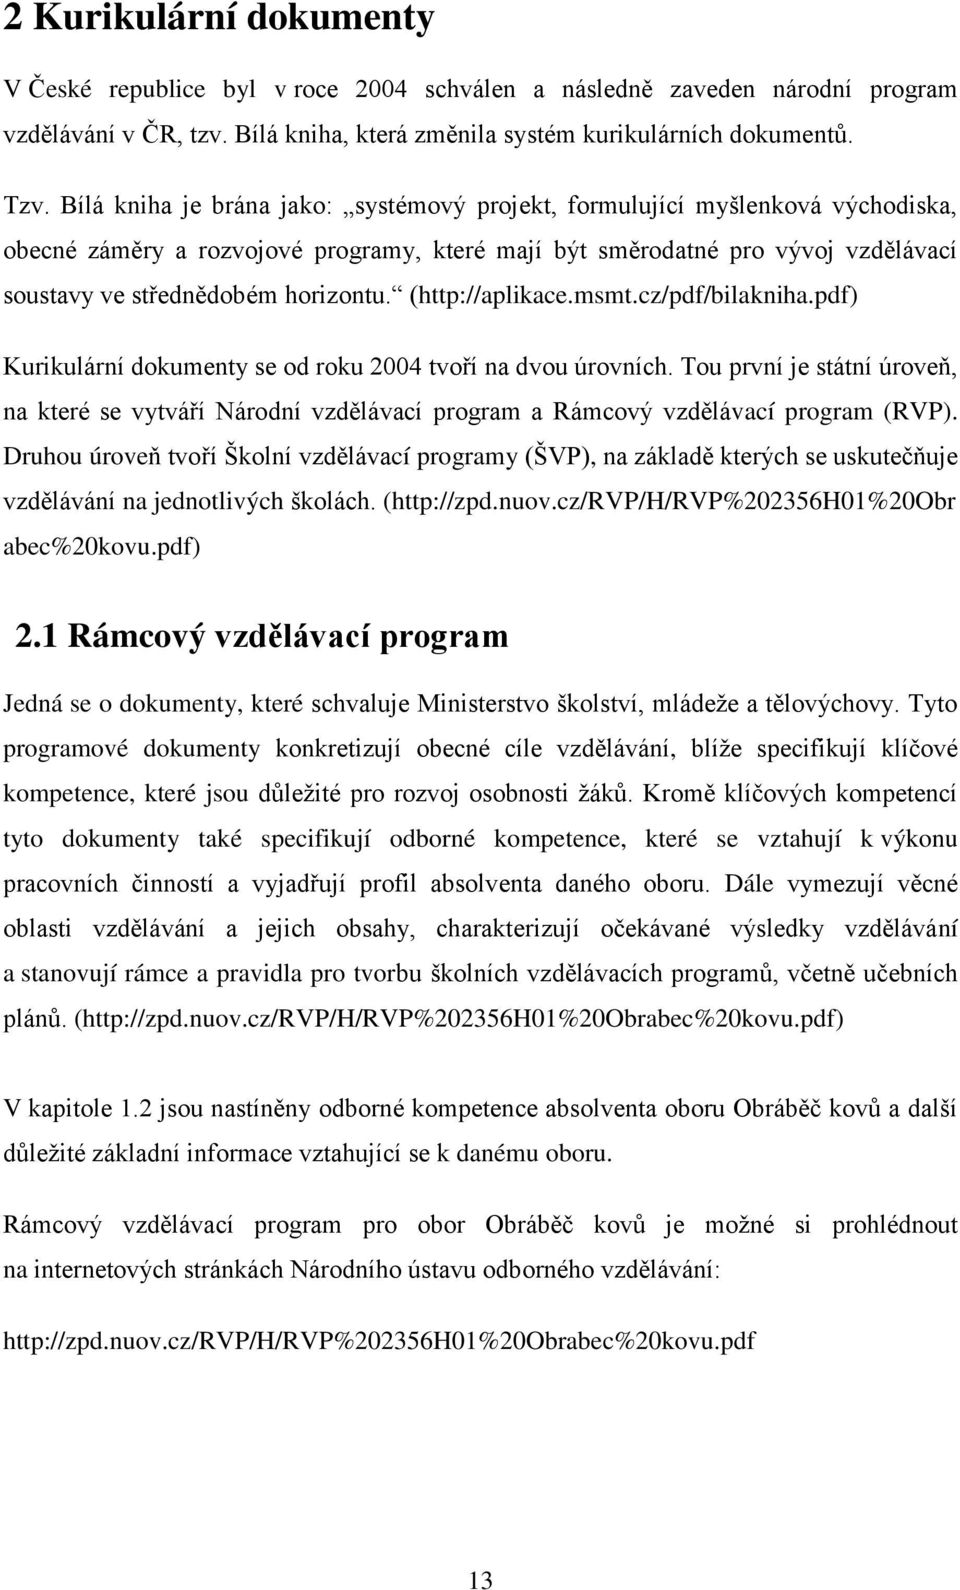 (http://aplikace.msmt.cz/pdf/bilakniha.pdf) Kurikulární dokumenty se od roku 2004 tvoří na dvou úrovních.